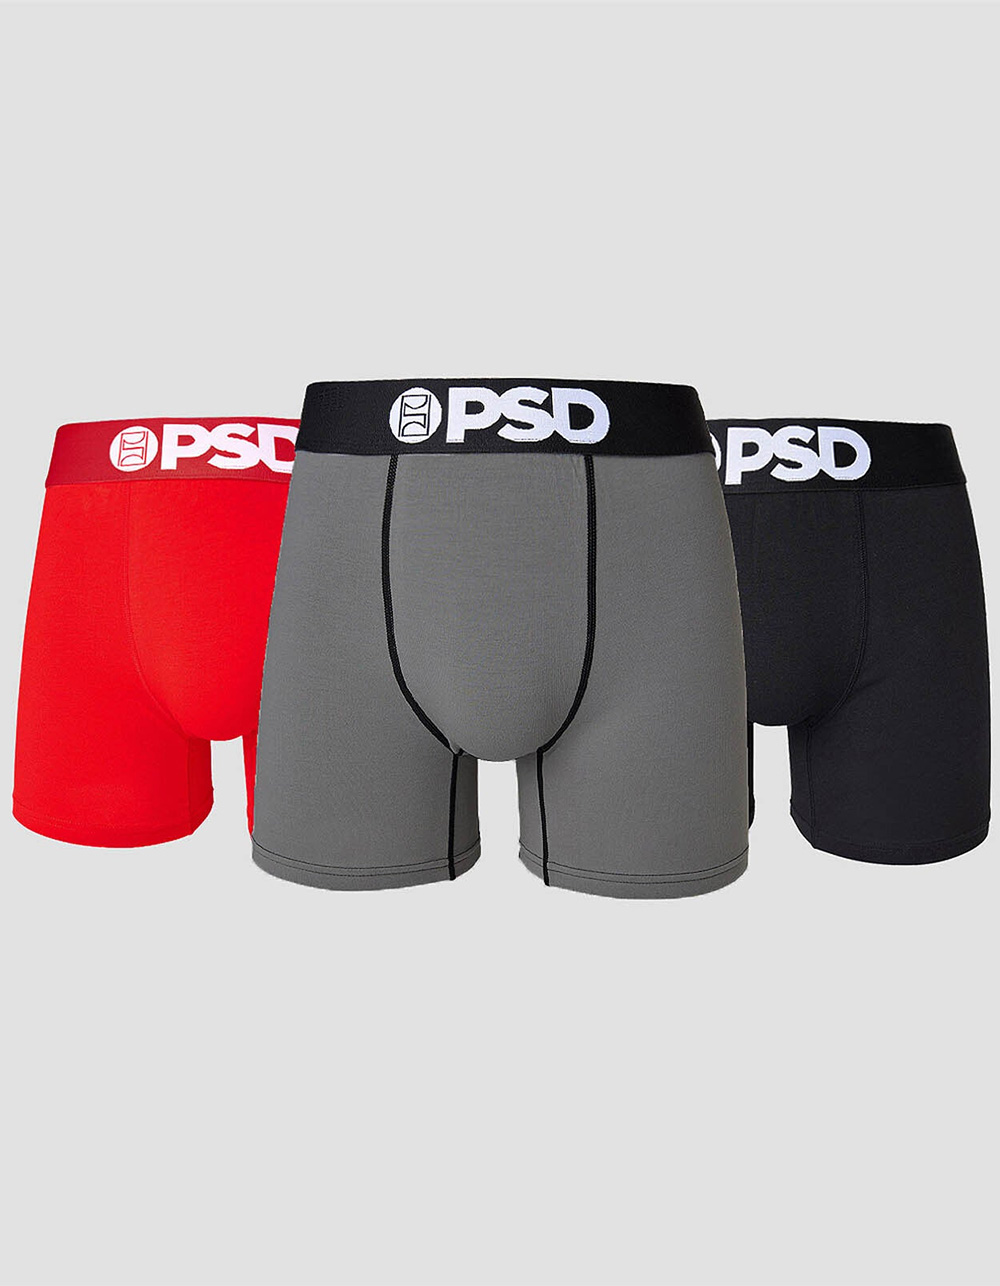 PSD, Intimates & Sleepwear, Matching Set Psd Underwear